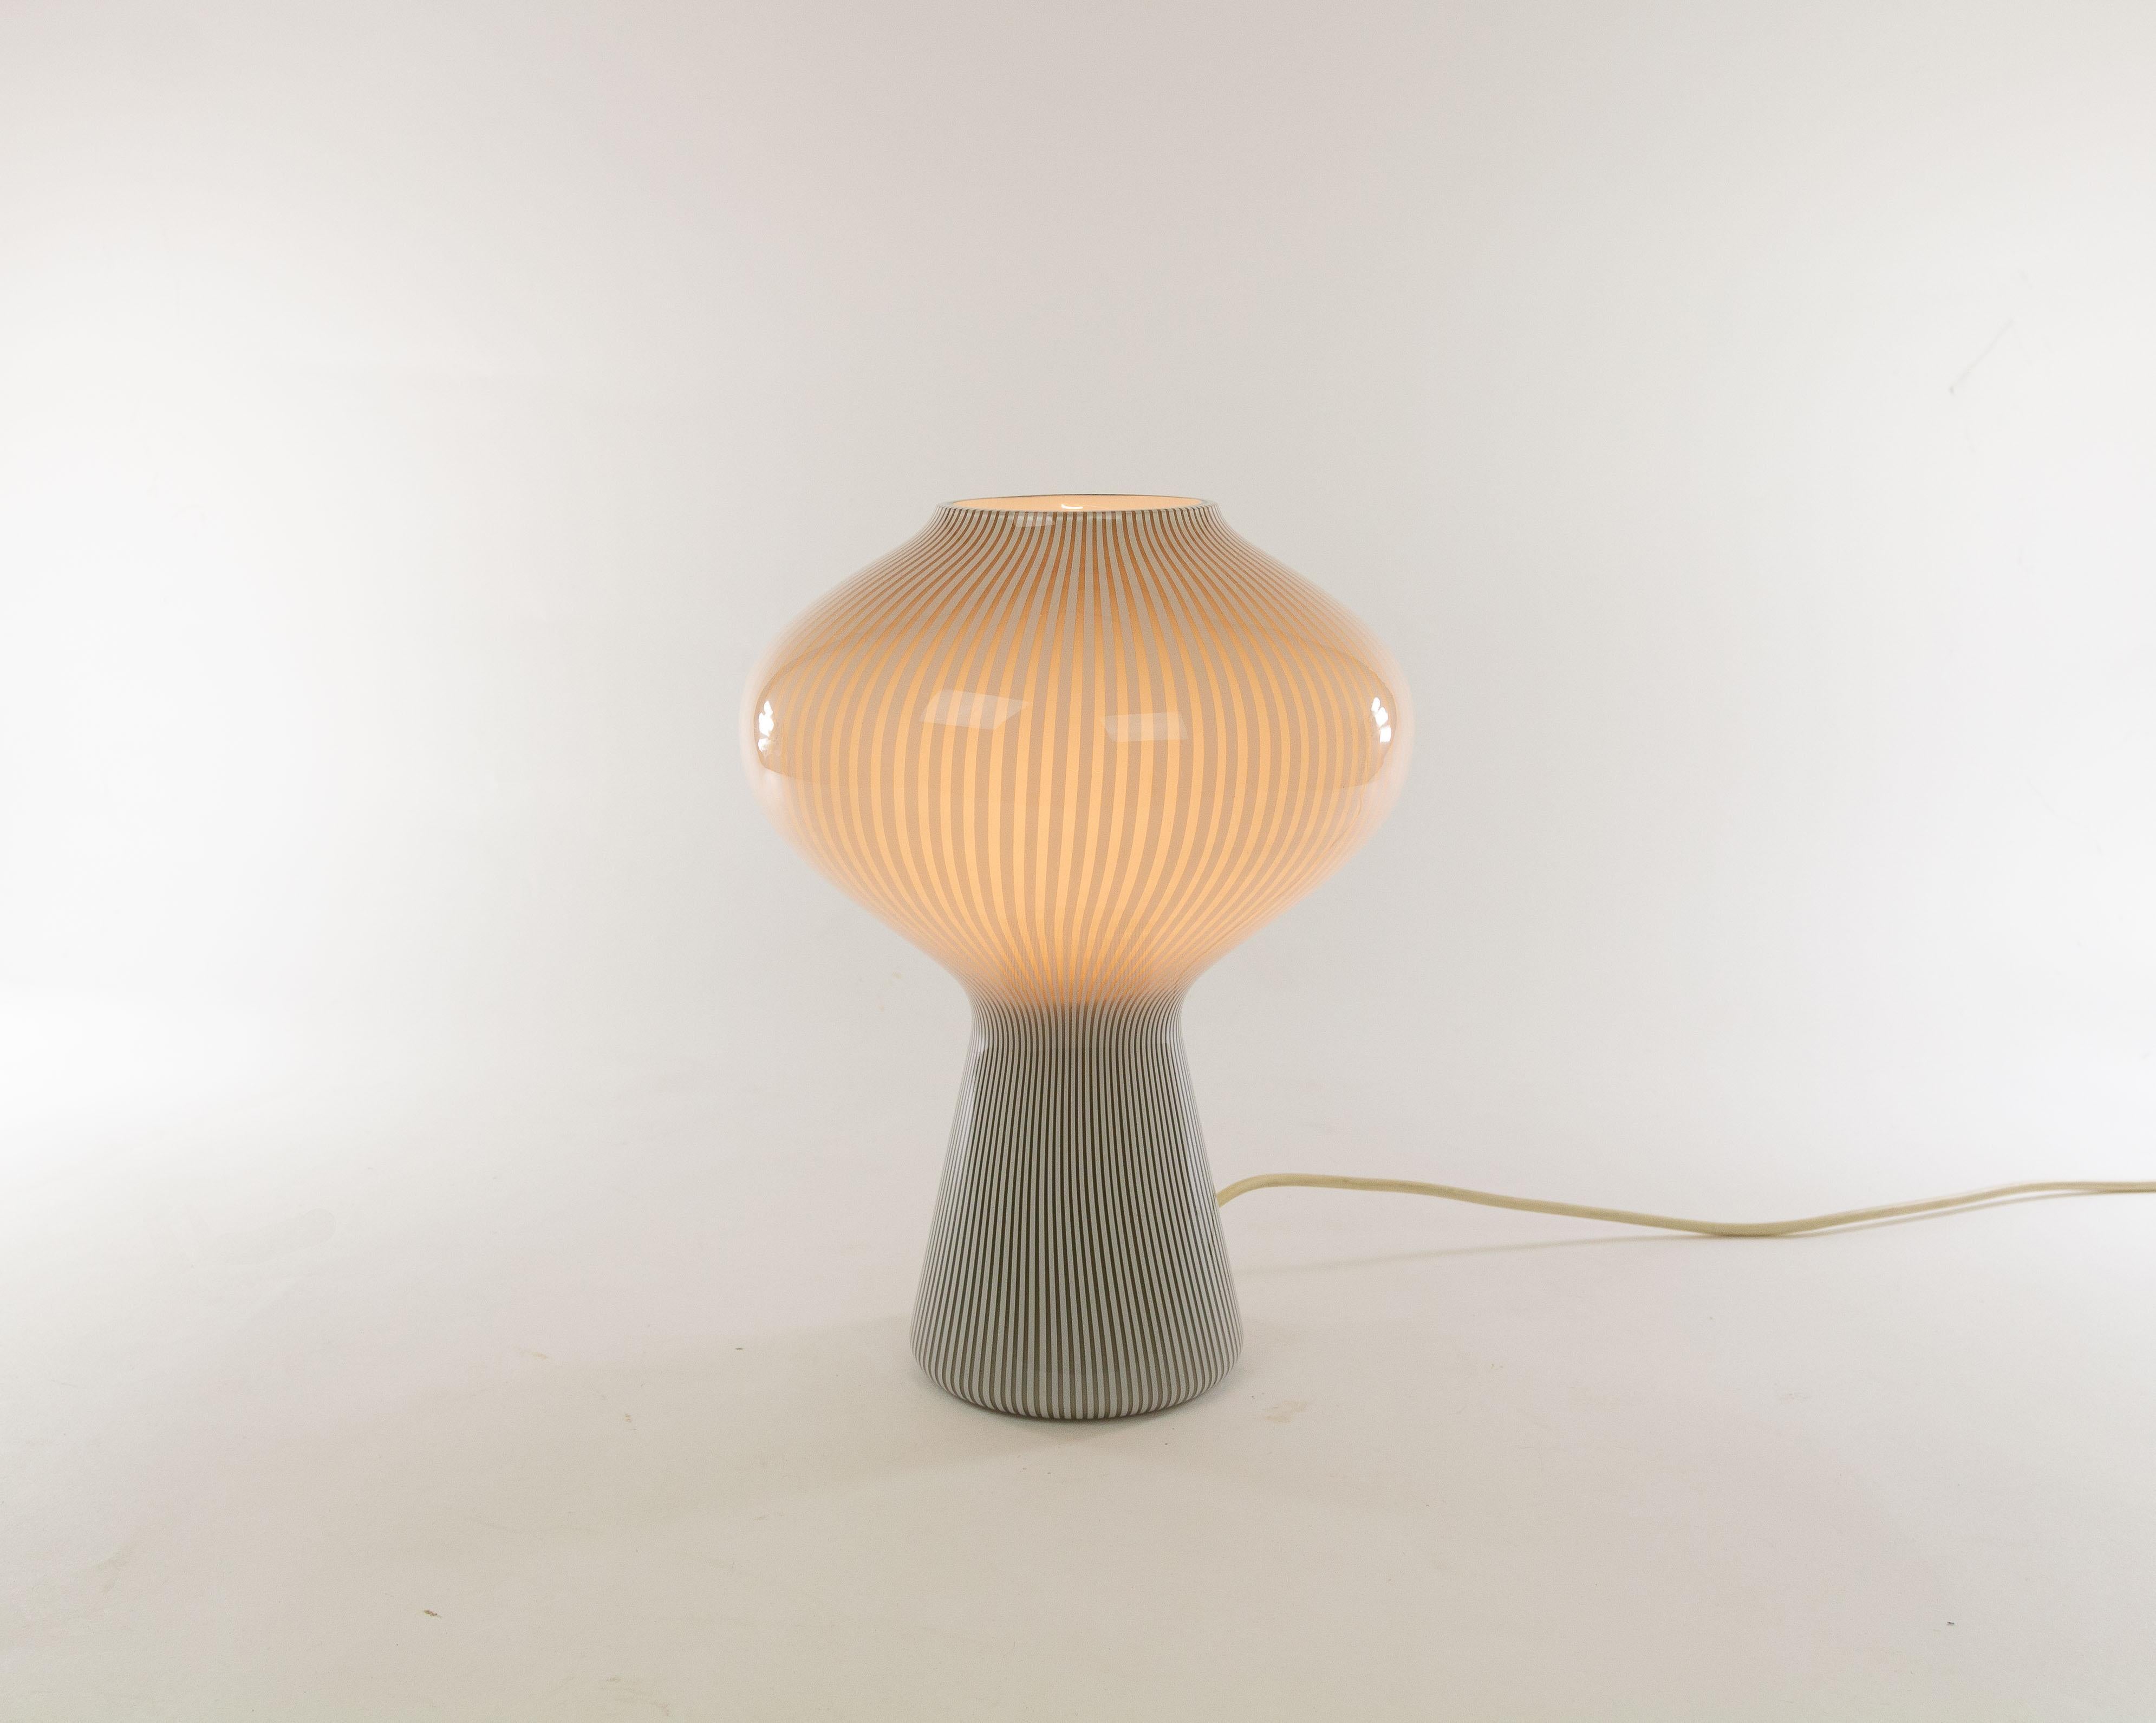 Murano Glass Striped Fungo Table Lamp by Massimo Vignelli for Venini, 1950s